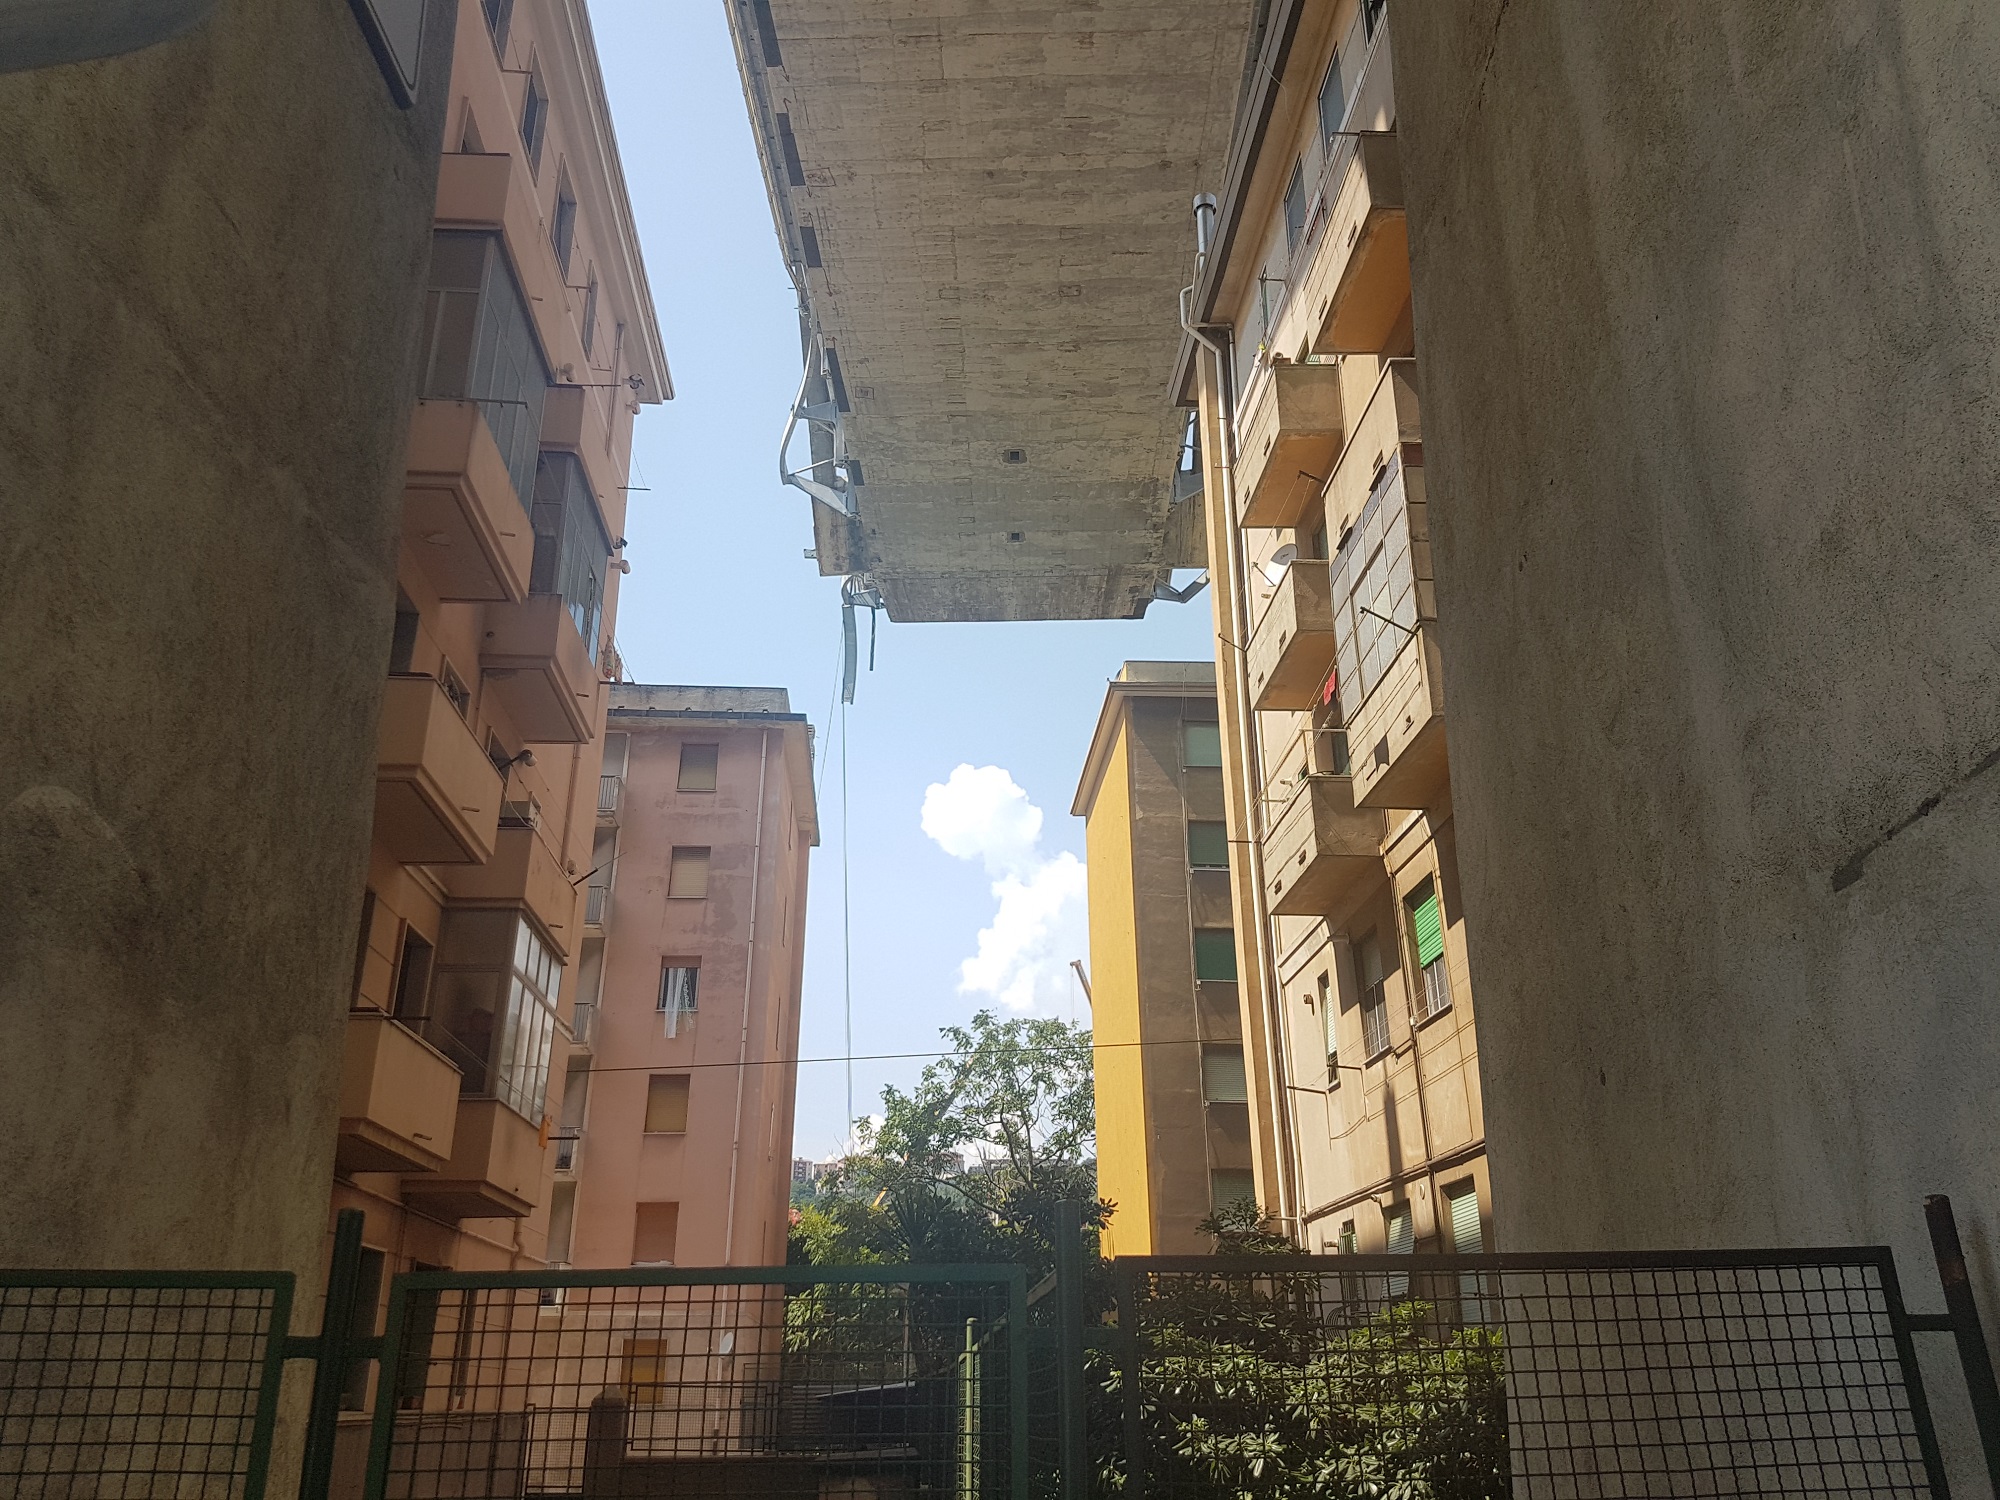 Il percorso sofferto di chi ha vissuto e vive sotto il ponte Morandi